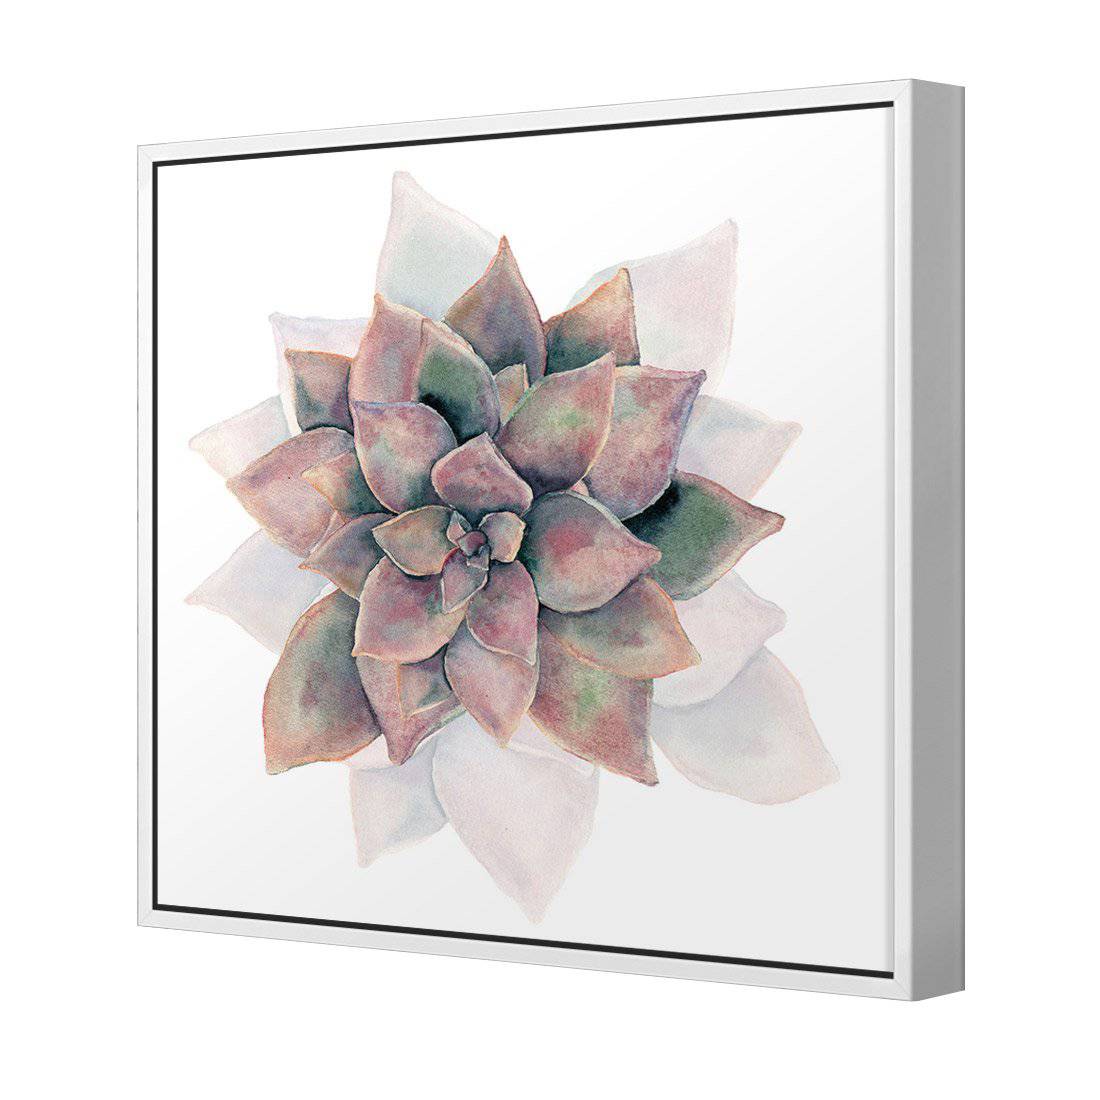 Succulent Rosette Canvas Art-Canvas-Wall Art Designs-30x30cm-Canvas - White Frame-Wall Art Designs